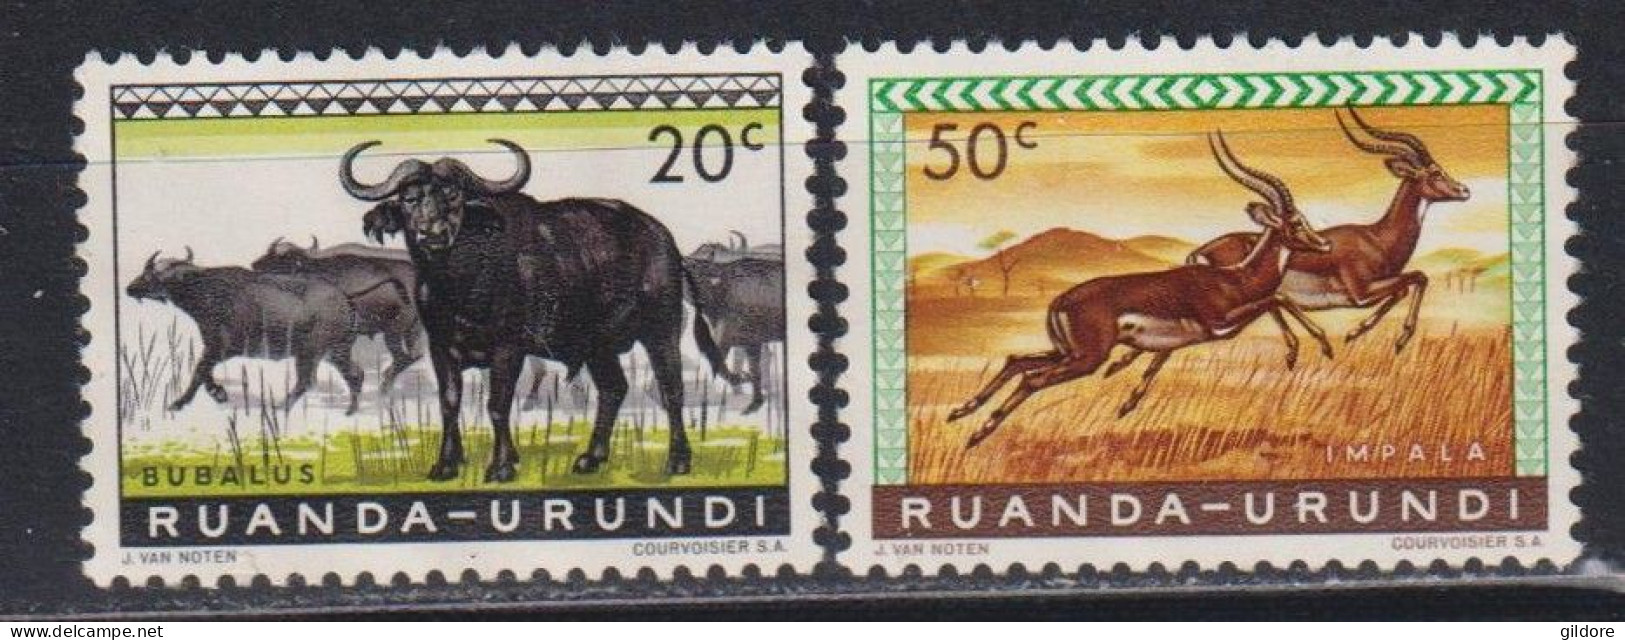 RUANDA URUNDI 1962 - 2 STAMP MNH - Ongebruikt